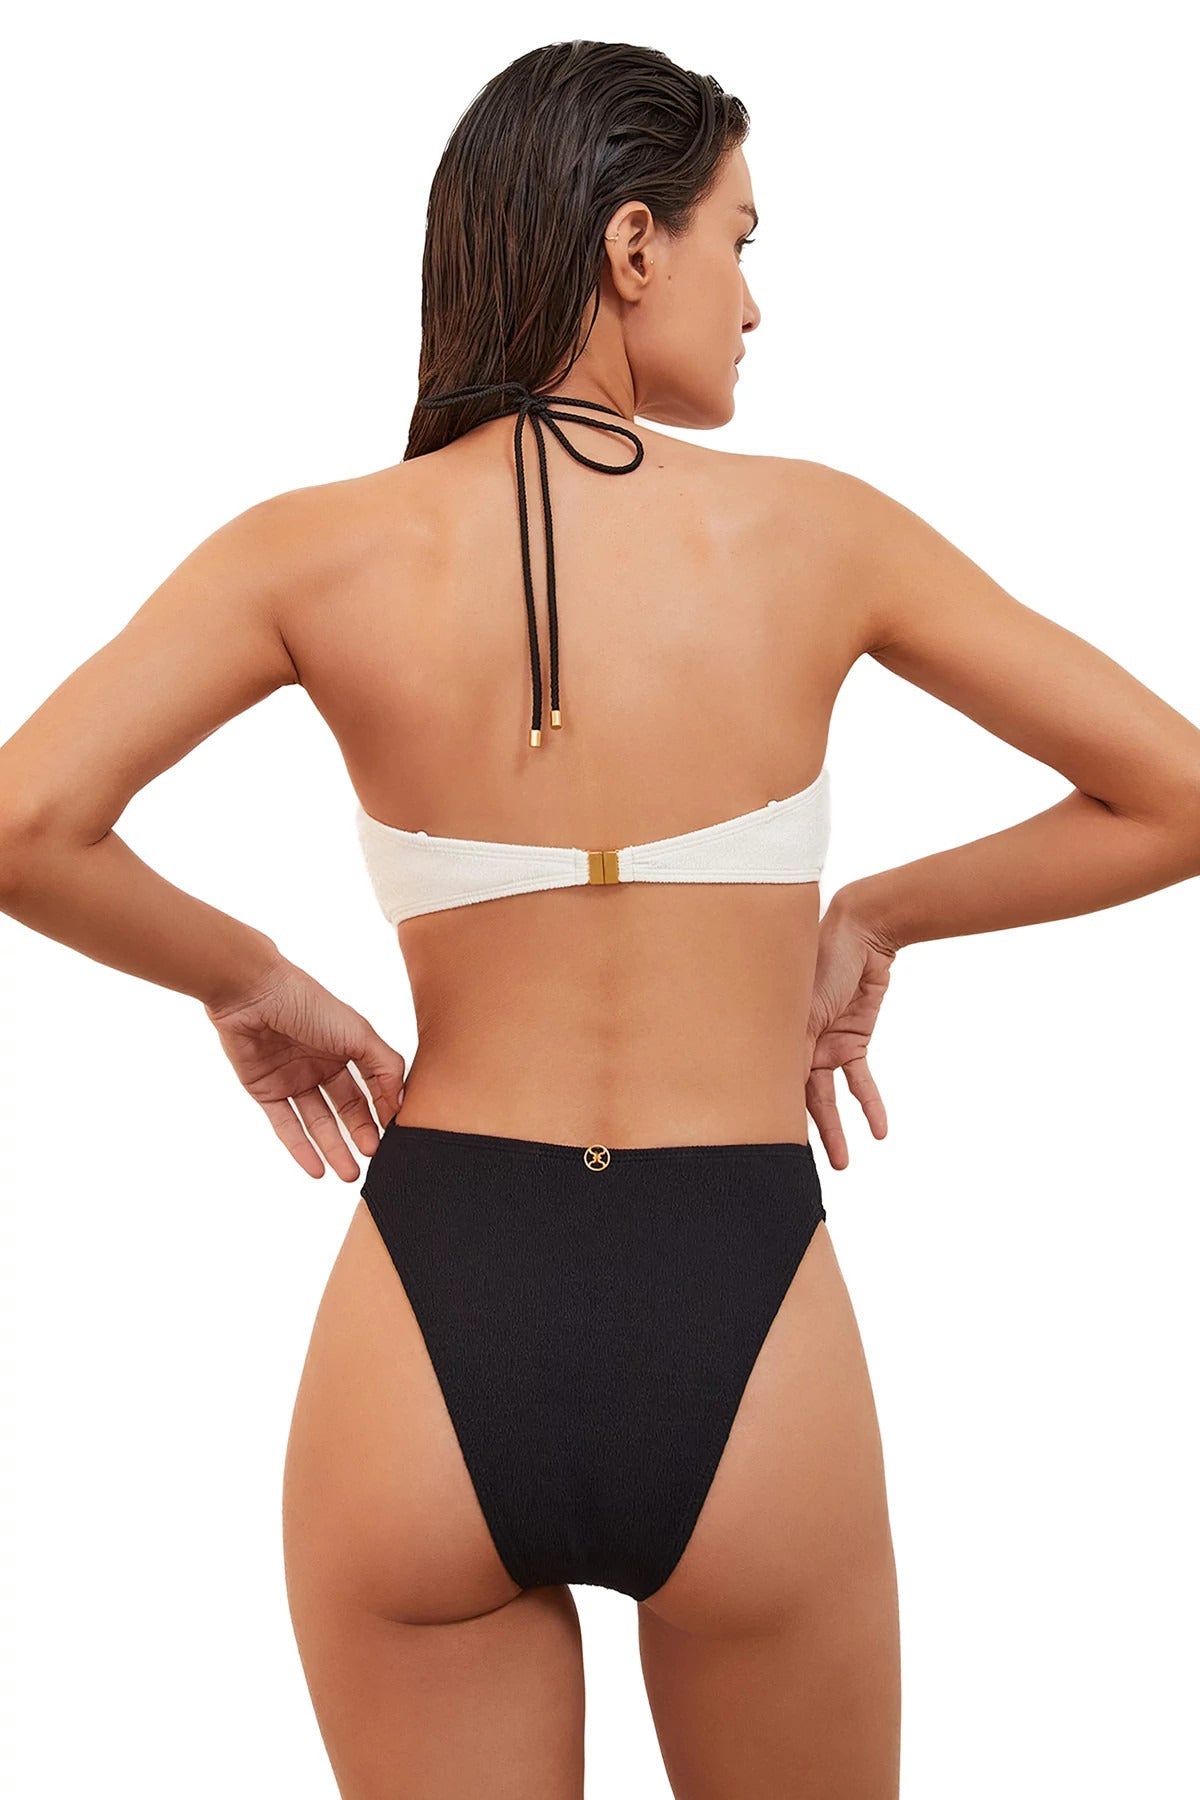 Vix Swimwear Women's Gi Cutout One Piece Swimsuit - OFF WHITE